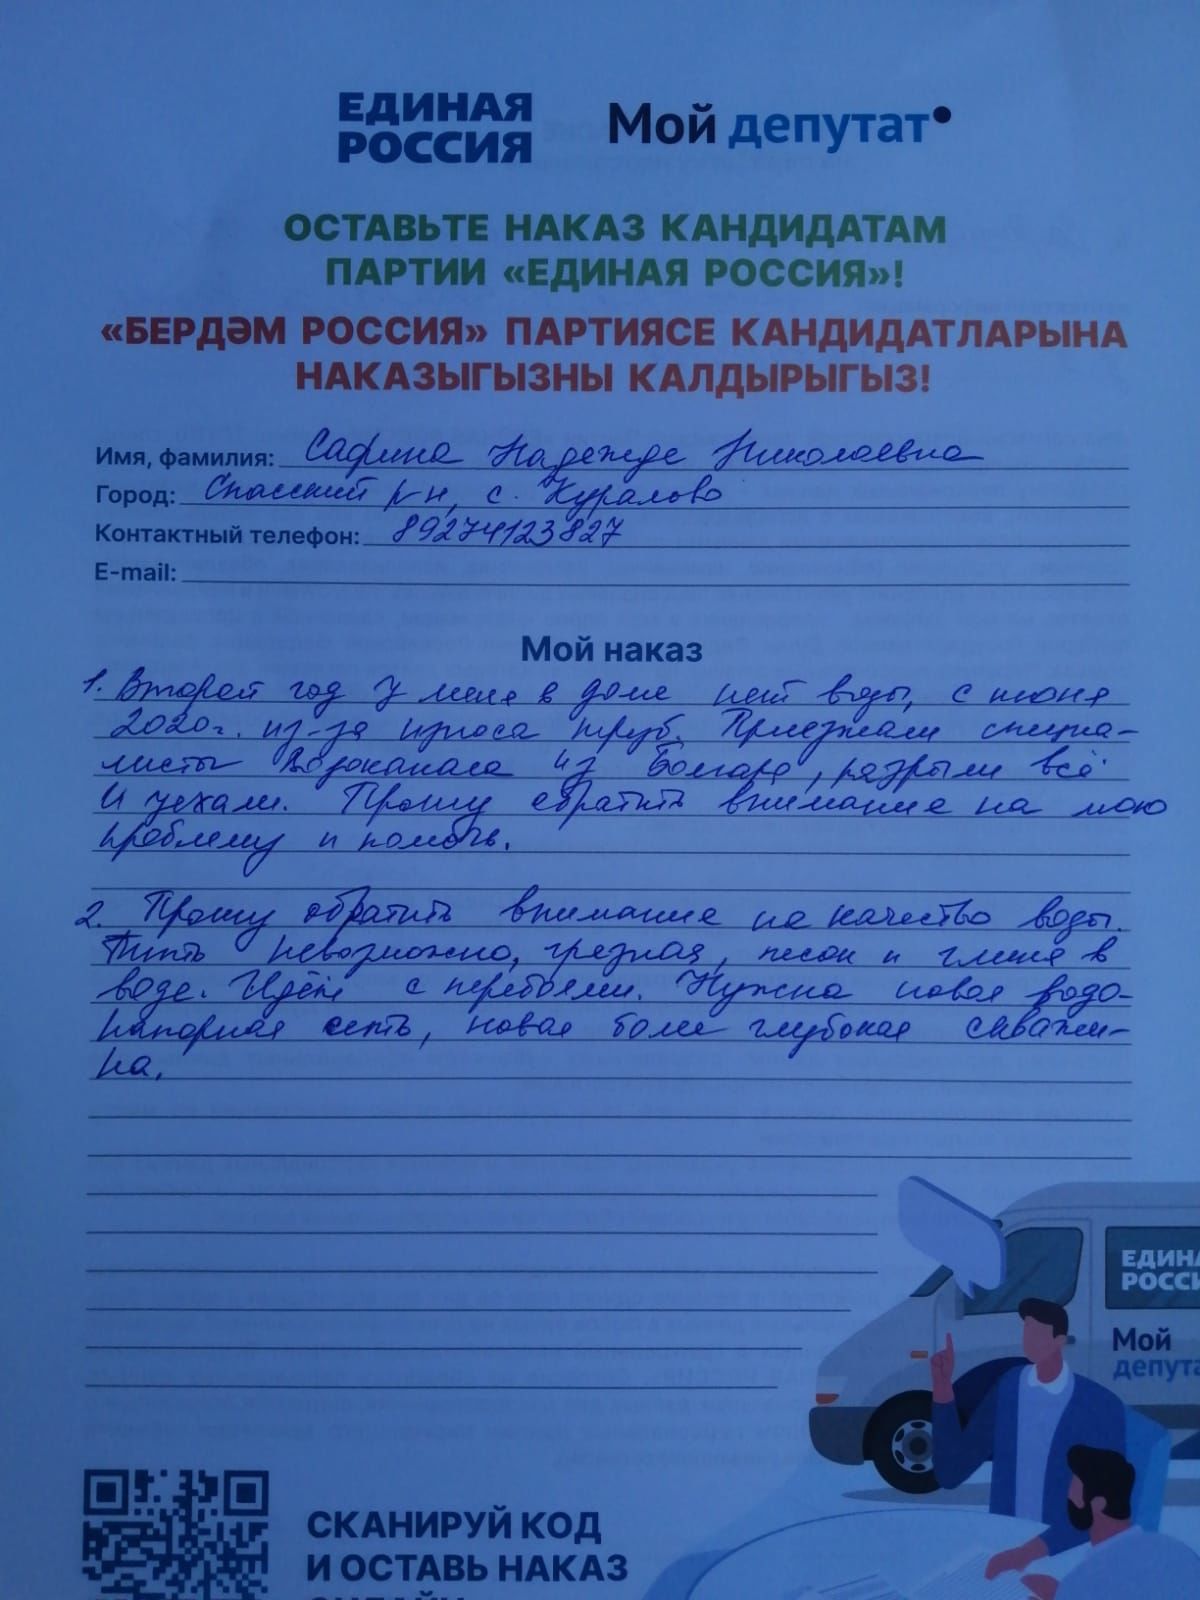 Жители Куралова попросили кандидата в депутаты Айдара Метшина восстановить пристань